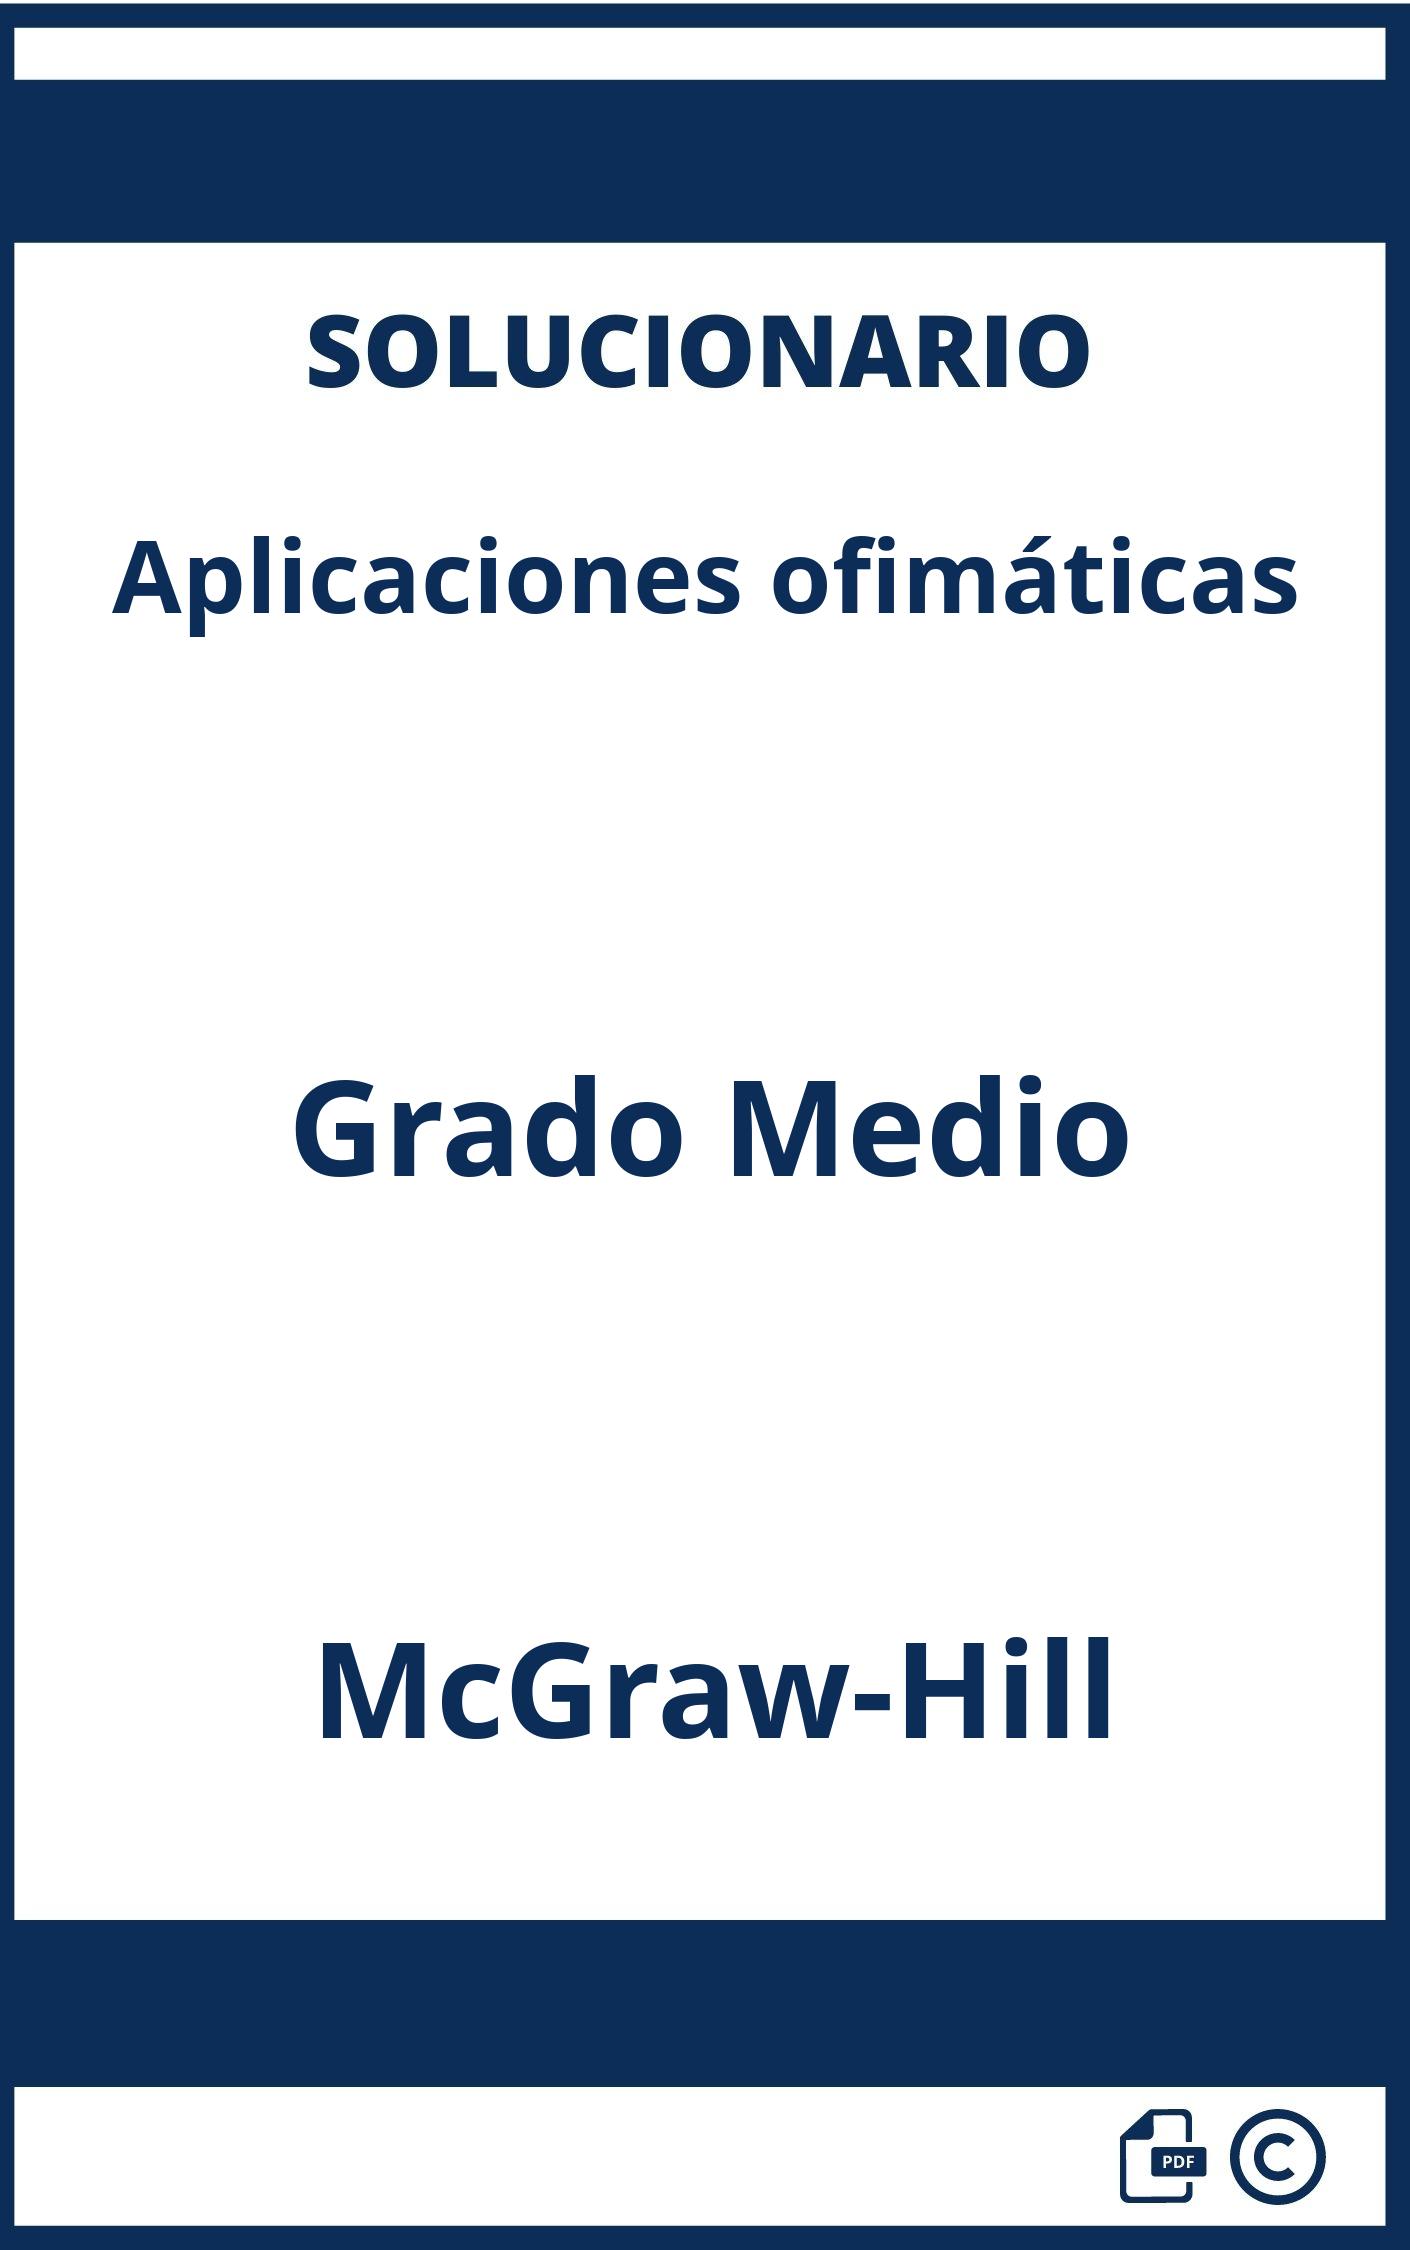 Solucionario Aplicaciones ofimáticas Grado Medio McGraw-Hill